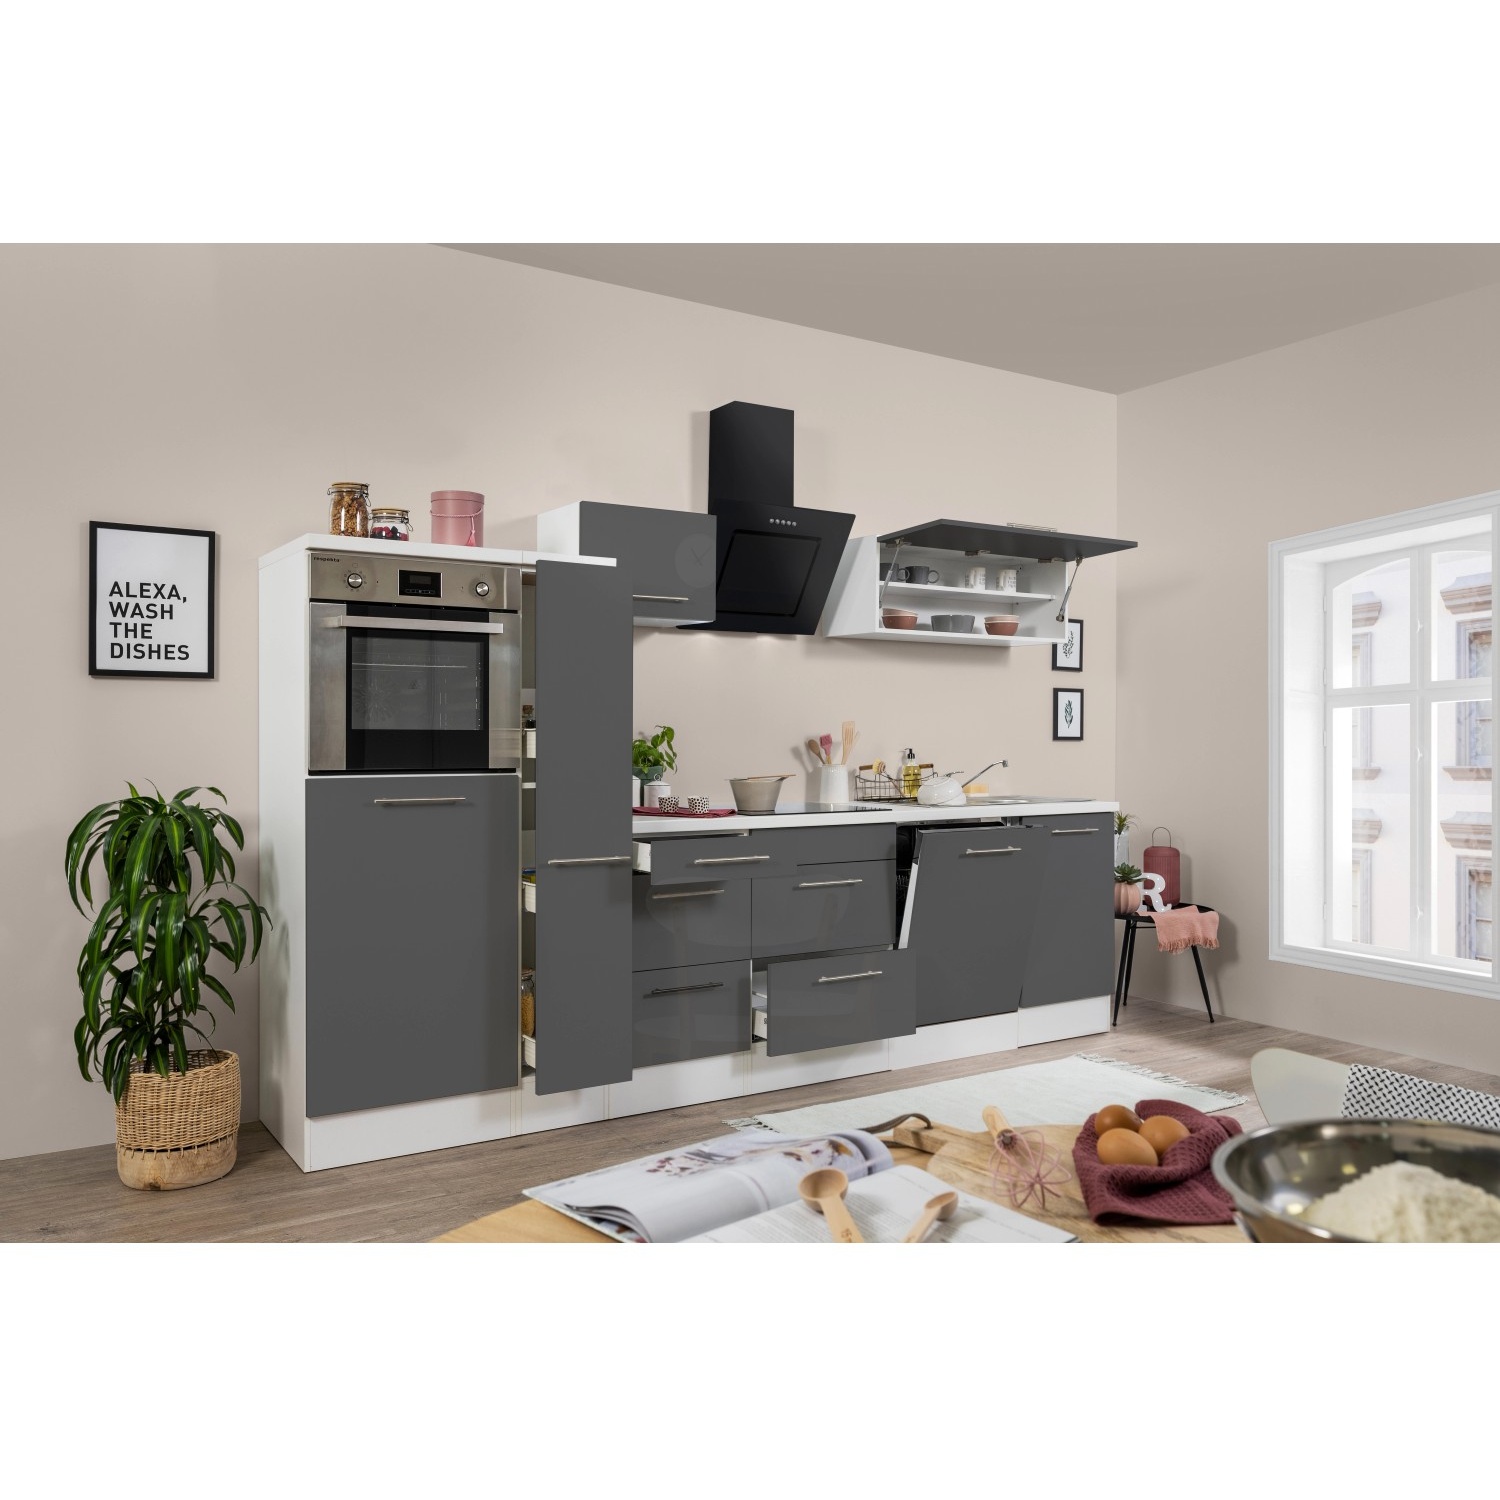 Bild von Premium Küchenzeile Küchenblock Weiß Grau